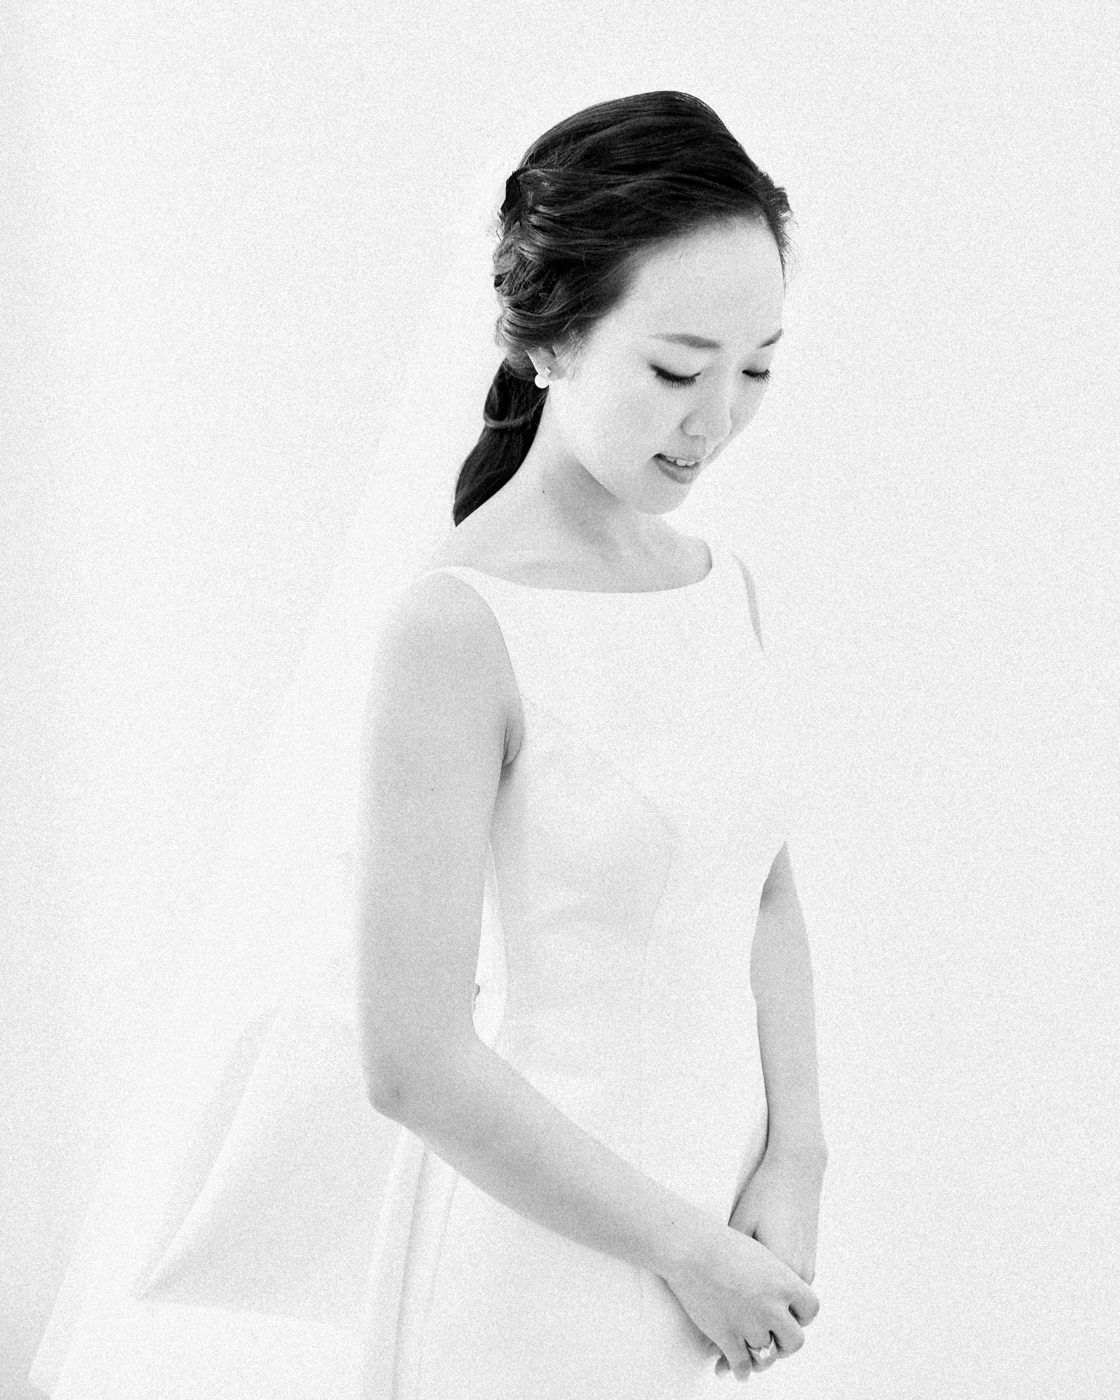 the bride portrait in black and white